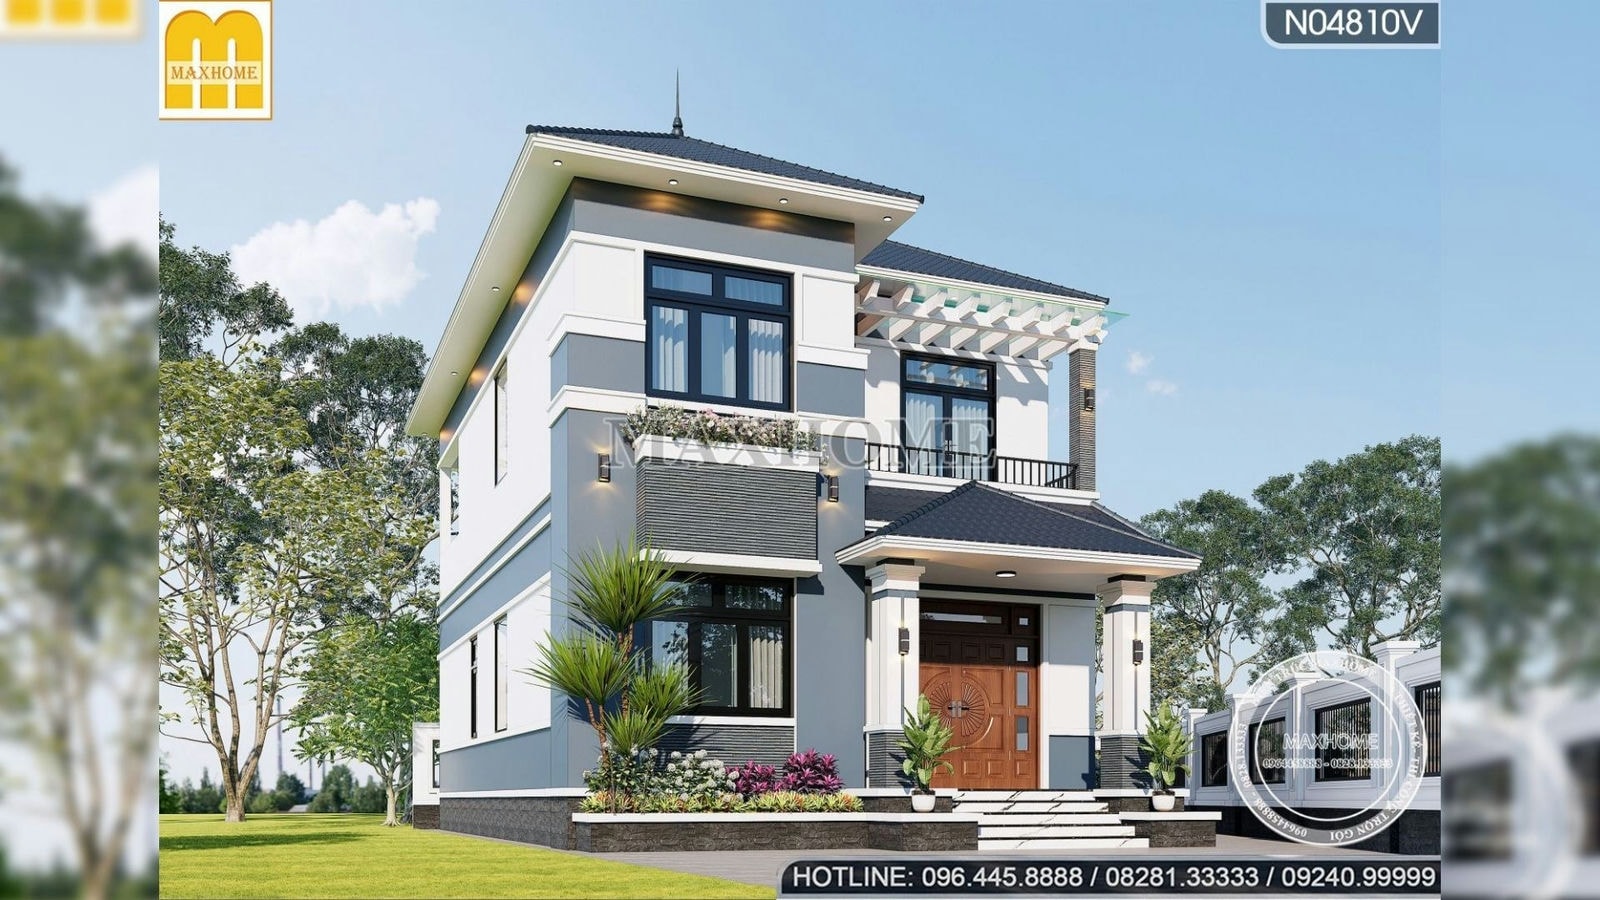 Maxhome xây nhà mái Nhật đẹp trọn gói 1,2 tỷ ở Quảng Ngãi | MH01389